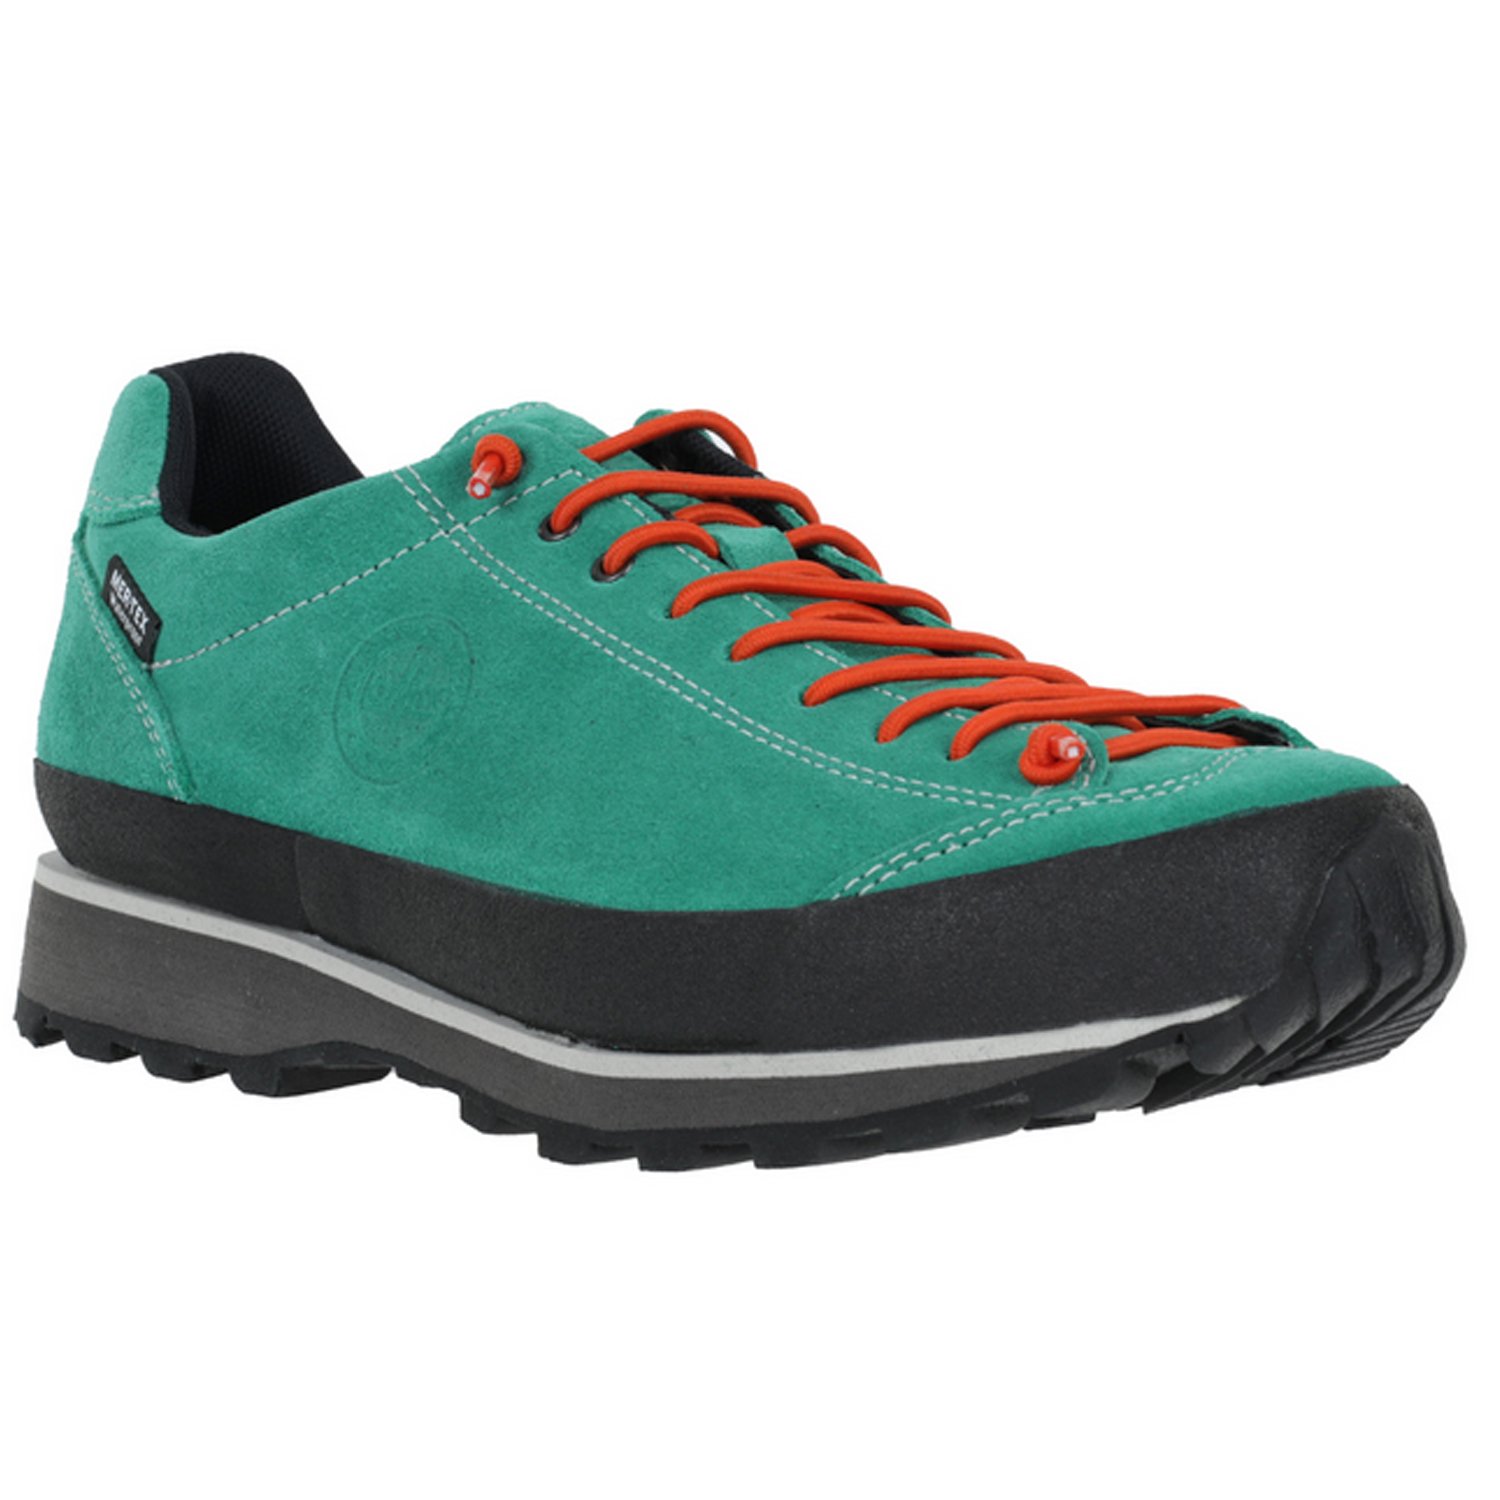 Ботинки Lomer Bio Naturale Suede MTX Elf, мужской, зеленый/оранжевый, 2023-24, 50082_A_27 ботинки lomer bio naturale canvas jasper 36 eu